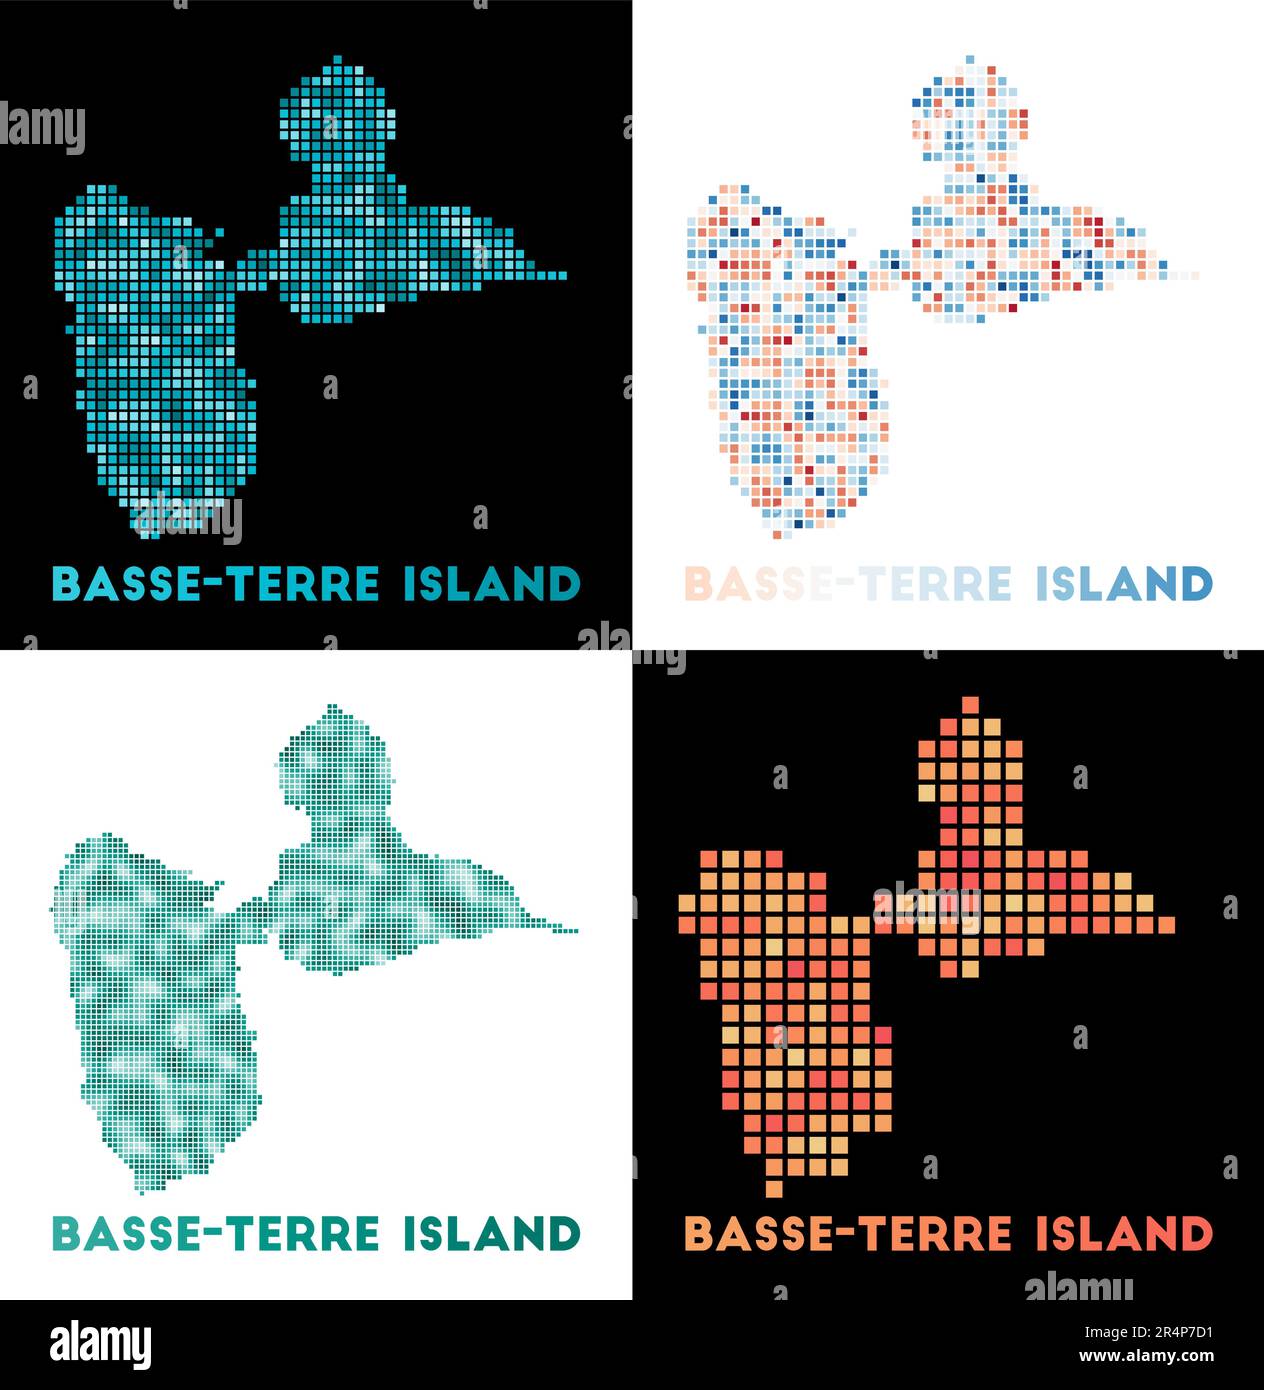 Carte de l'île de Basse-Terre. Collection de cartes de l'île de Basse-Terre en pointillés. Illustration vectorielle. Illustration de Vecteur